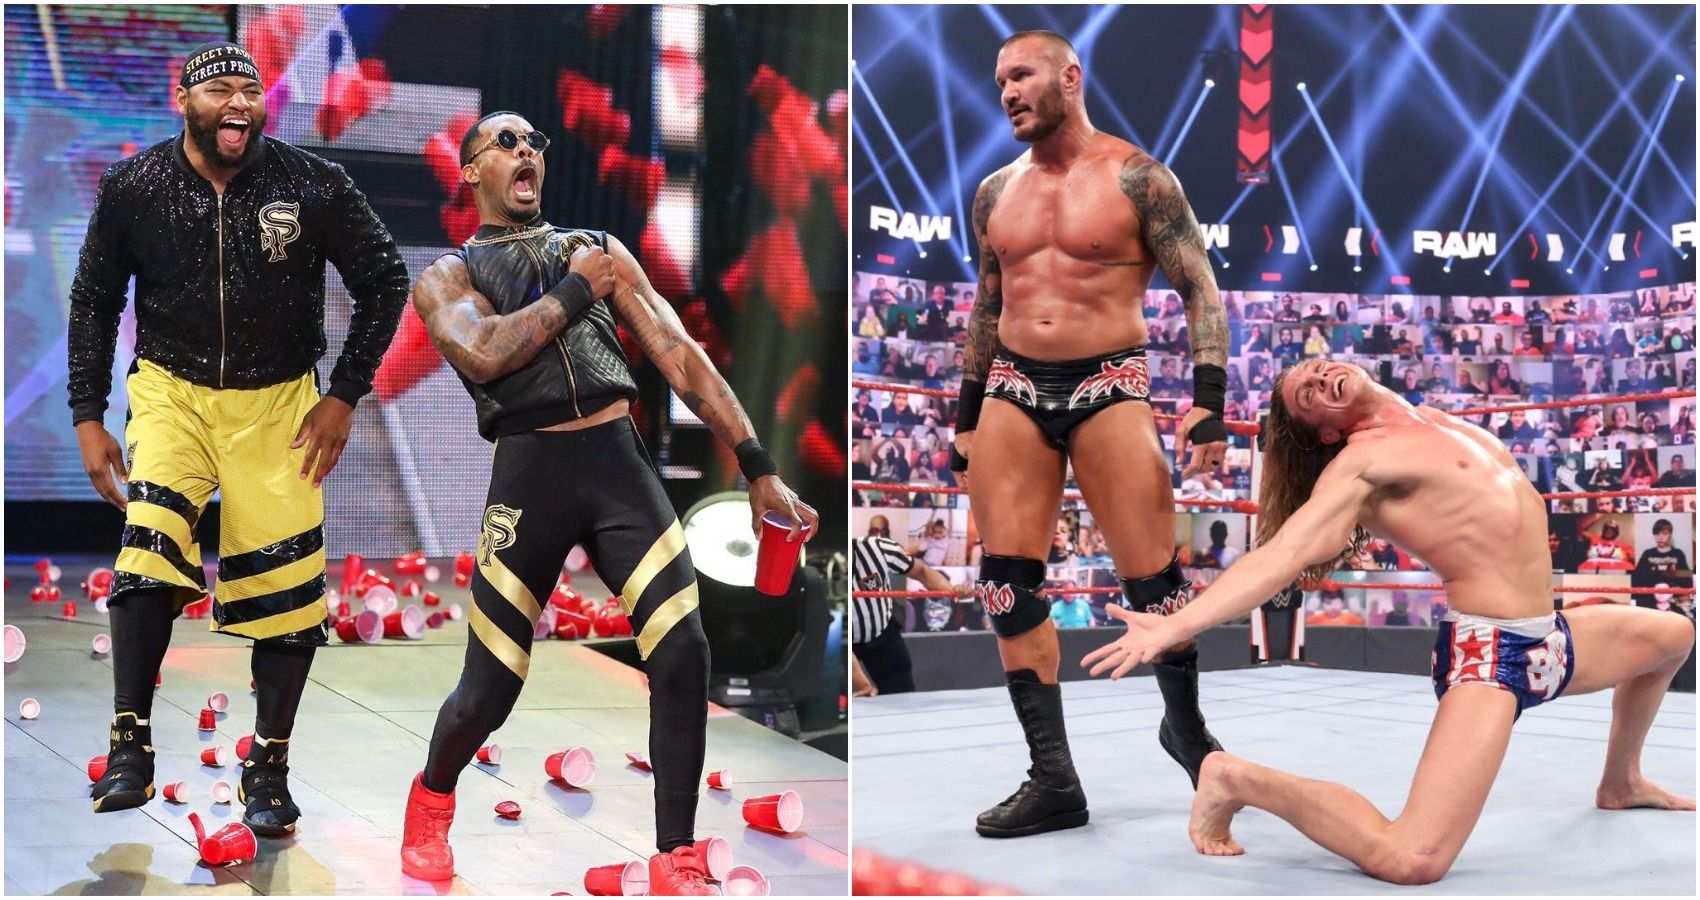 9 Best Tag Teams In WWE, Ranked By Promo Skills